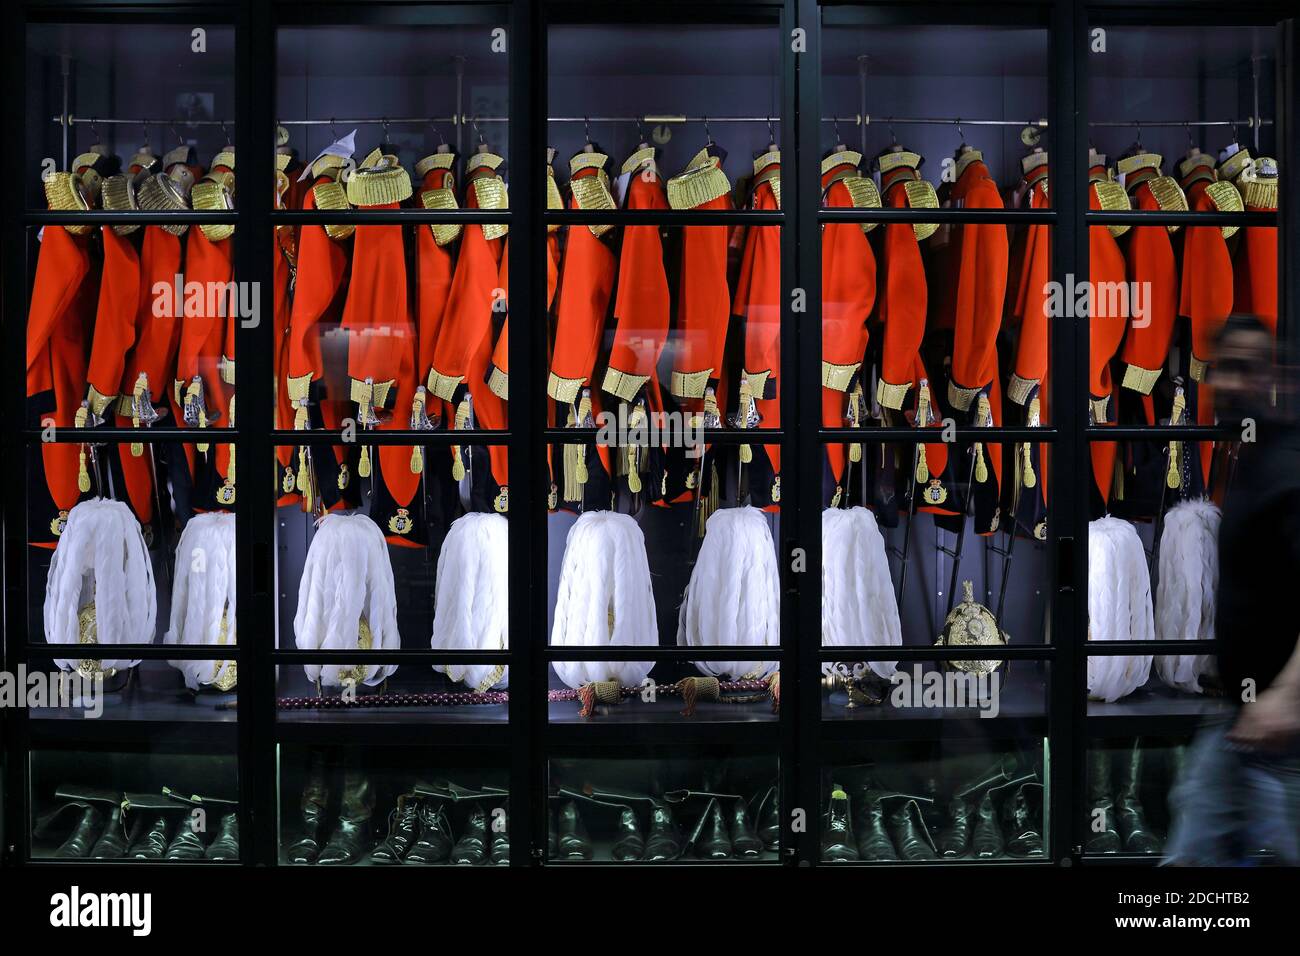 Armadietto Gives & Hawkes contenente una fila di uniformi scarlatto, abbellite con nappine d'oro e aiguillette intrecciate. Foto Stock